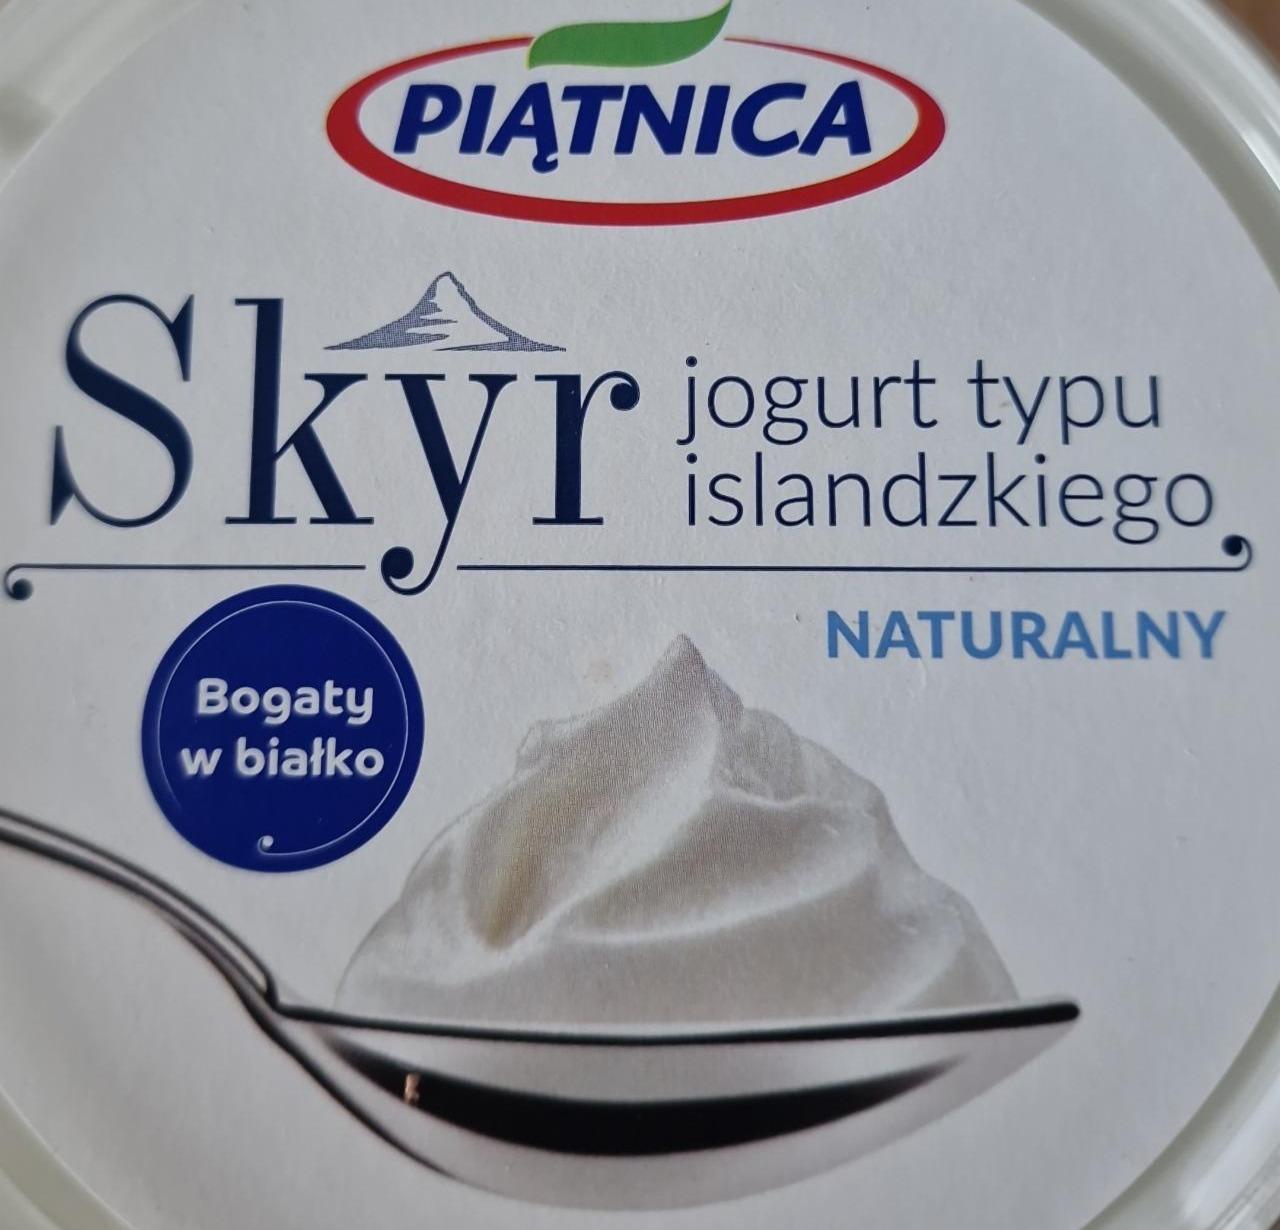 Фото - Skyr йогурт ісландський Piątnica